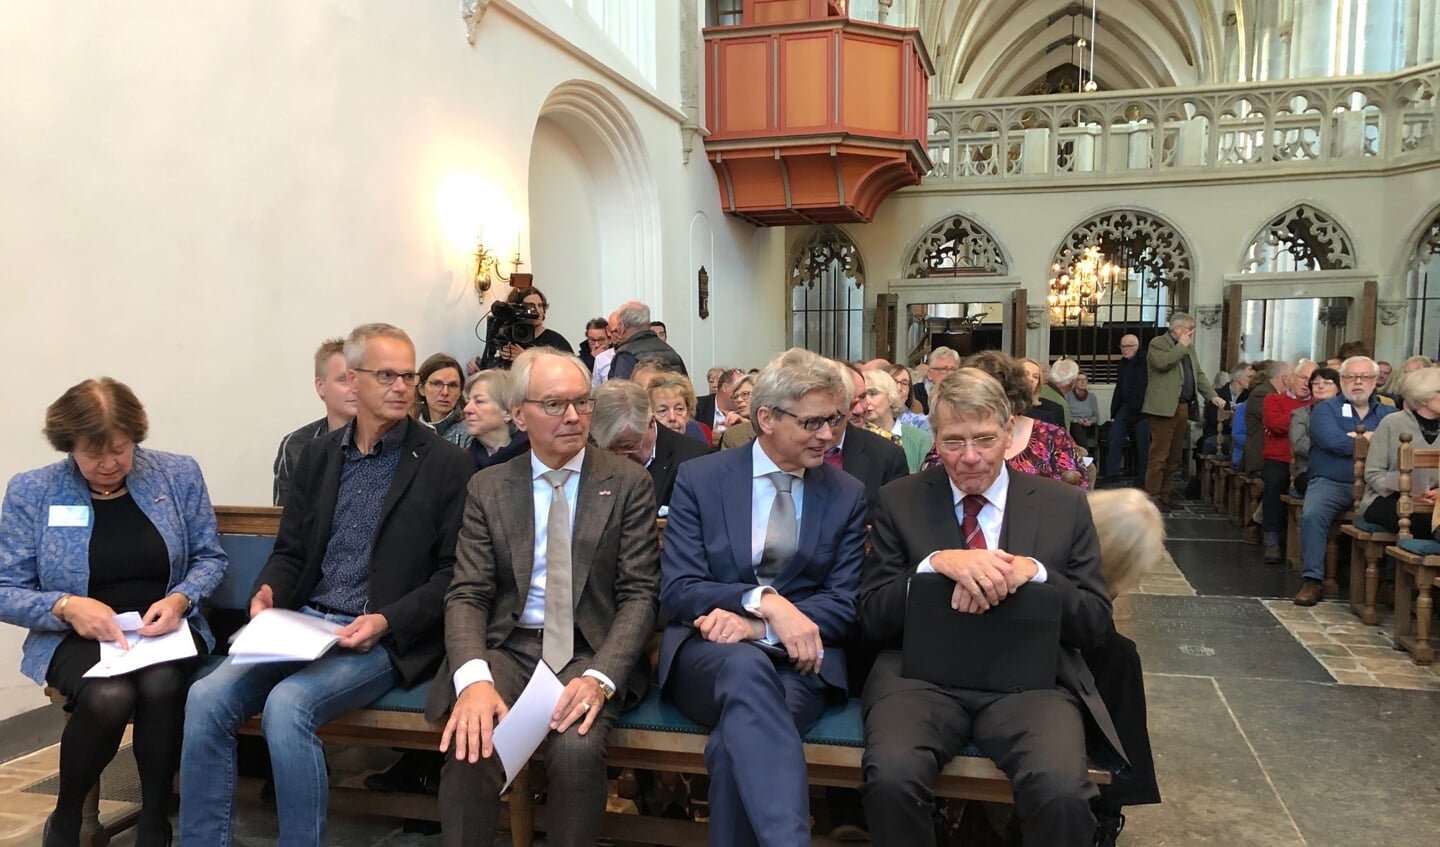 Zaterdagmiddag vond een speciale bijeenkomst rond Johan van Oldenbarnevelt plaats in de Sint-Joriskerk in Amersfoort. Minister van Staat, Piet Hein Donner, was hierbij aanwezig. 